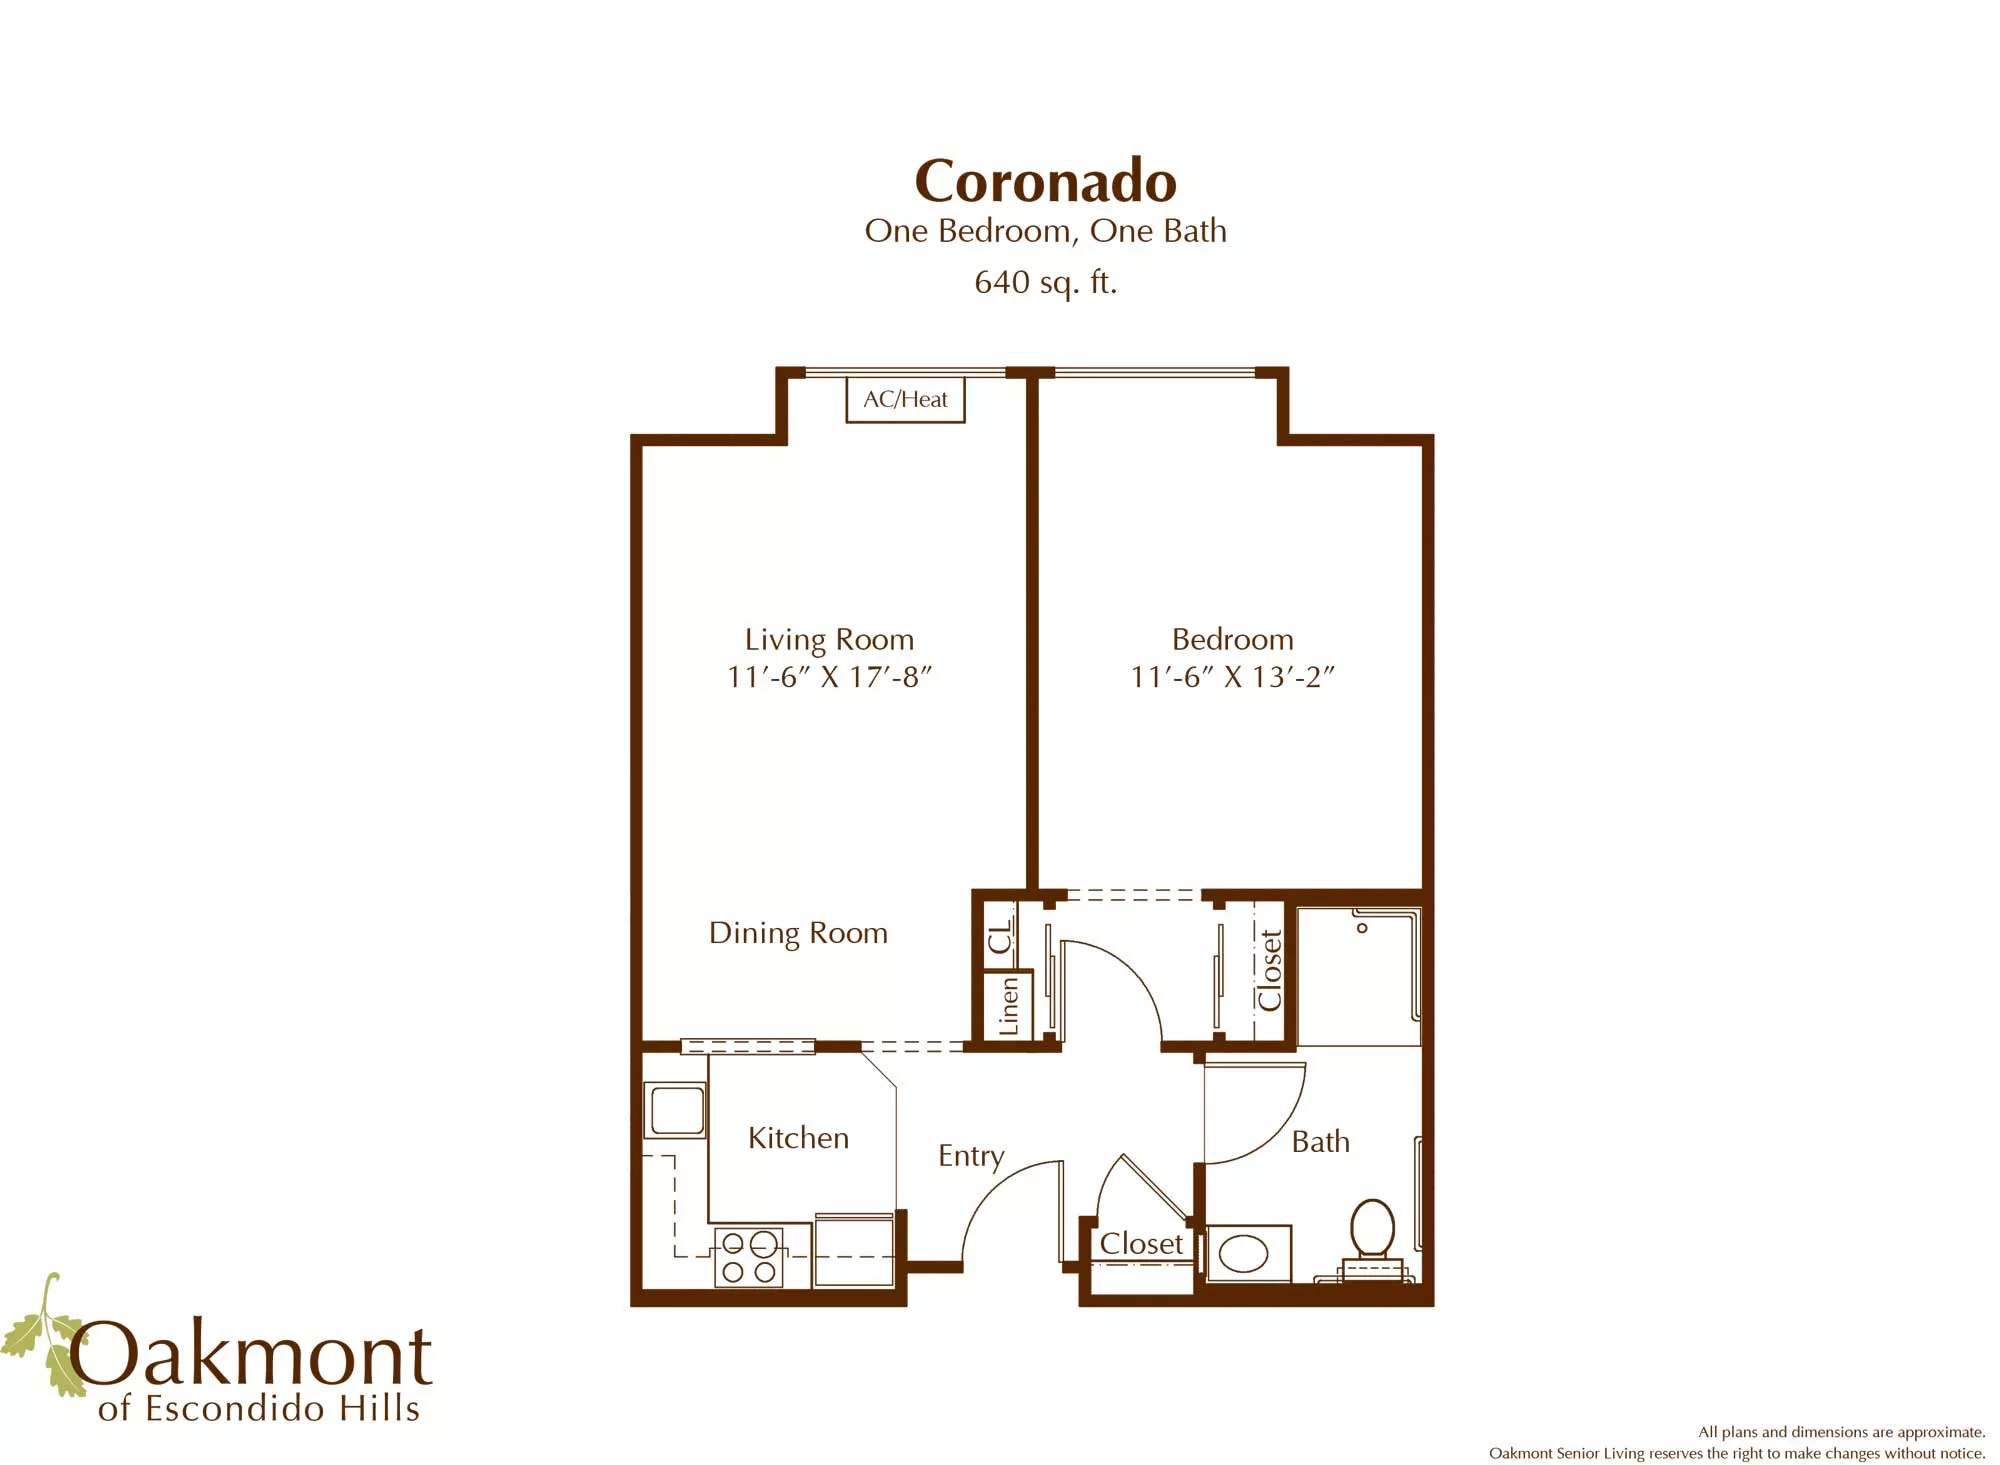 Coronado one bedroom floor plan